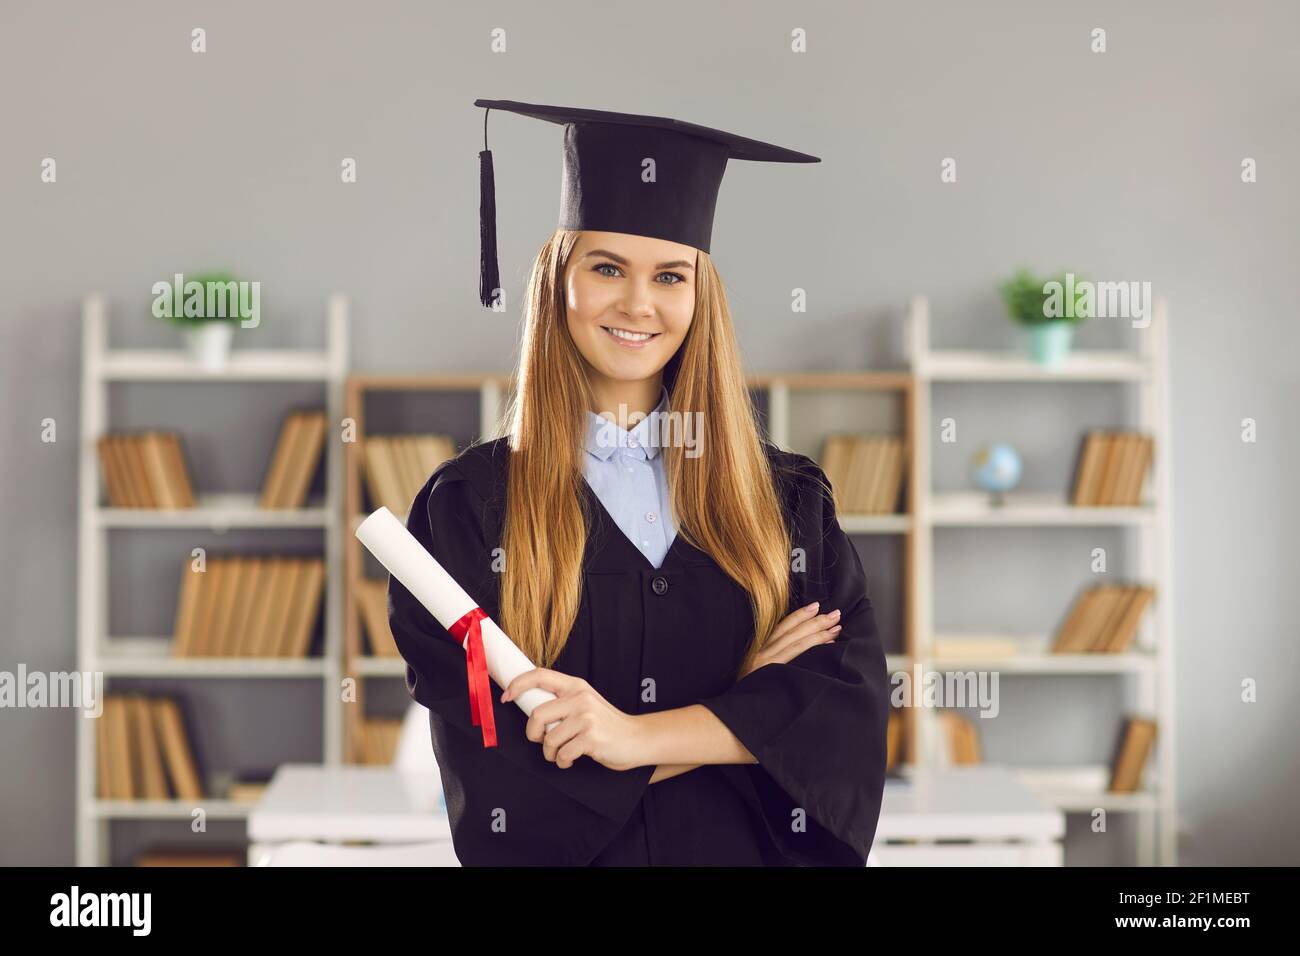 Studentin in Form eines Hochschulabsolventen und mit einem Diplom in ihren Händen. Stockfoto